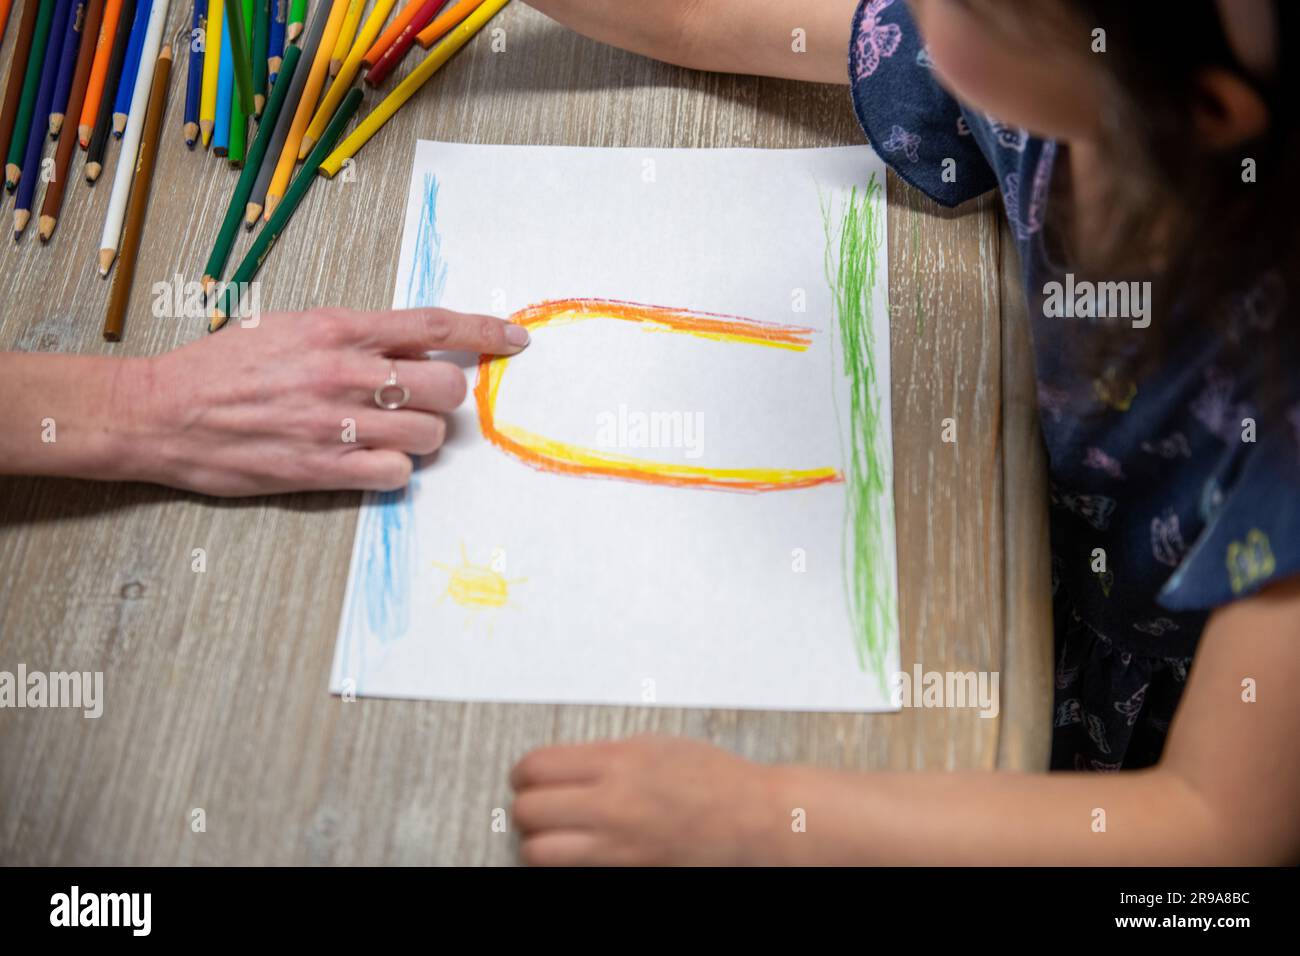 Ein kleines Kind zeichnet auf einem Stück Papier, während eine Erwachsene Hand auf das Kunstwerk zeigt Stockfoto